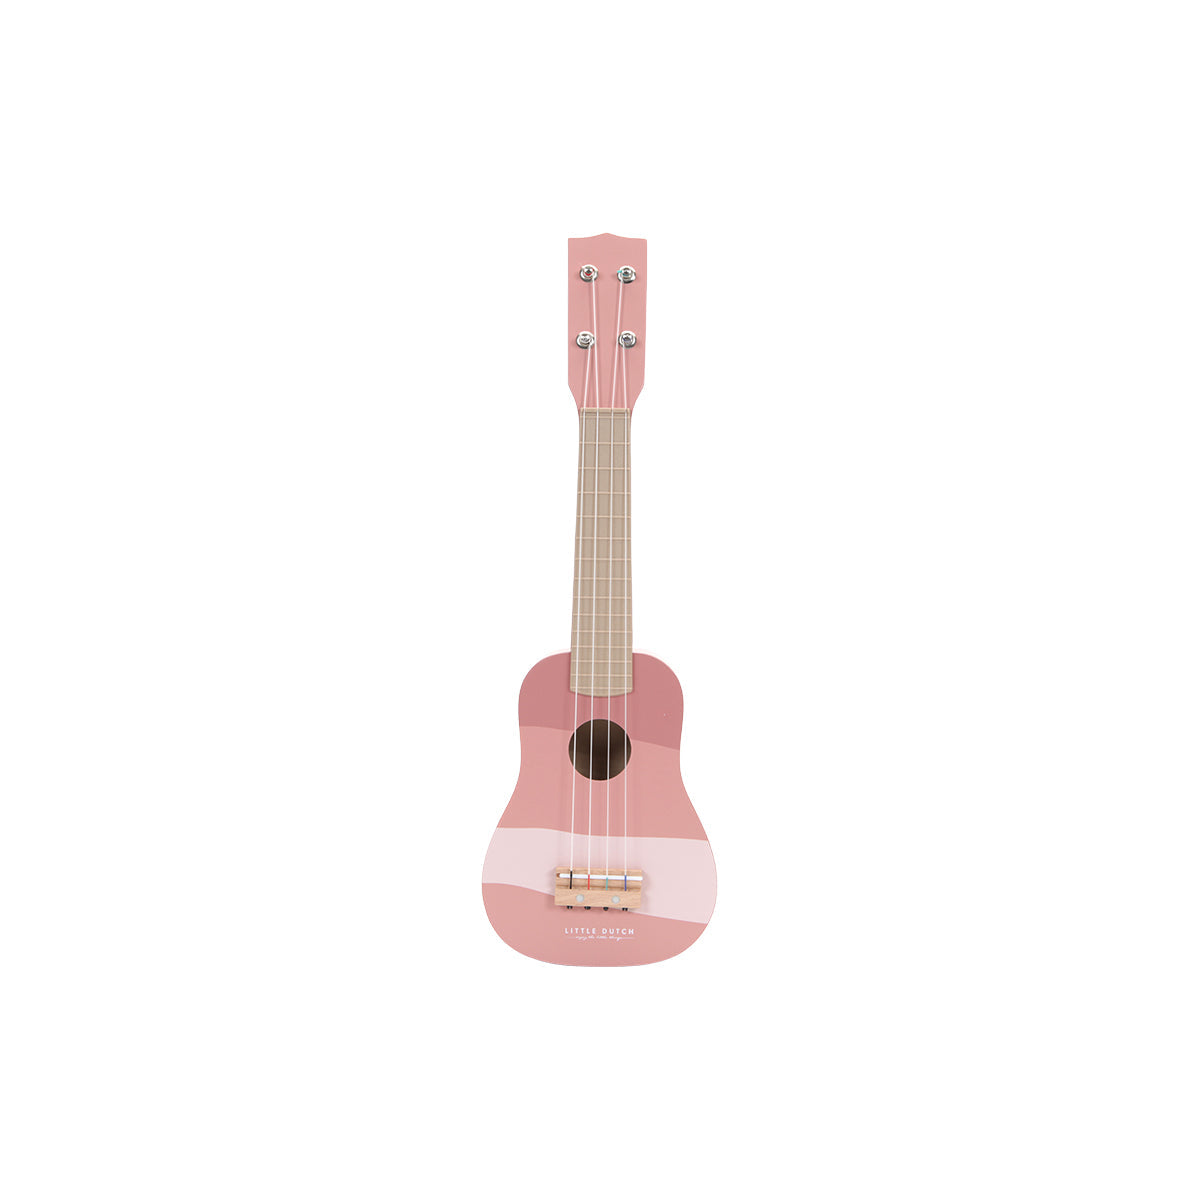 Deze houten roze gitaar van Little Dutch is een prachtig instrument om kinderen te begeleiden op hun reis om singer-songwriter te worden! Speel de juiste akkoorden en ontwikkel je muzikale talent met deze kindergitaar! VanZus